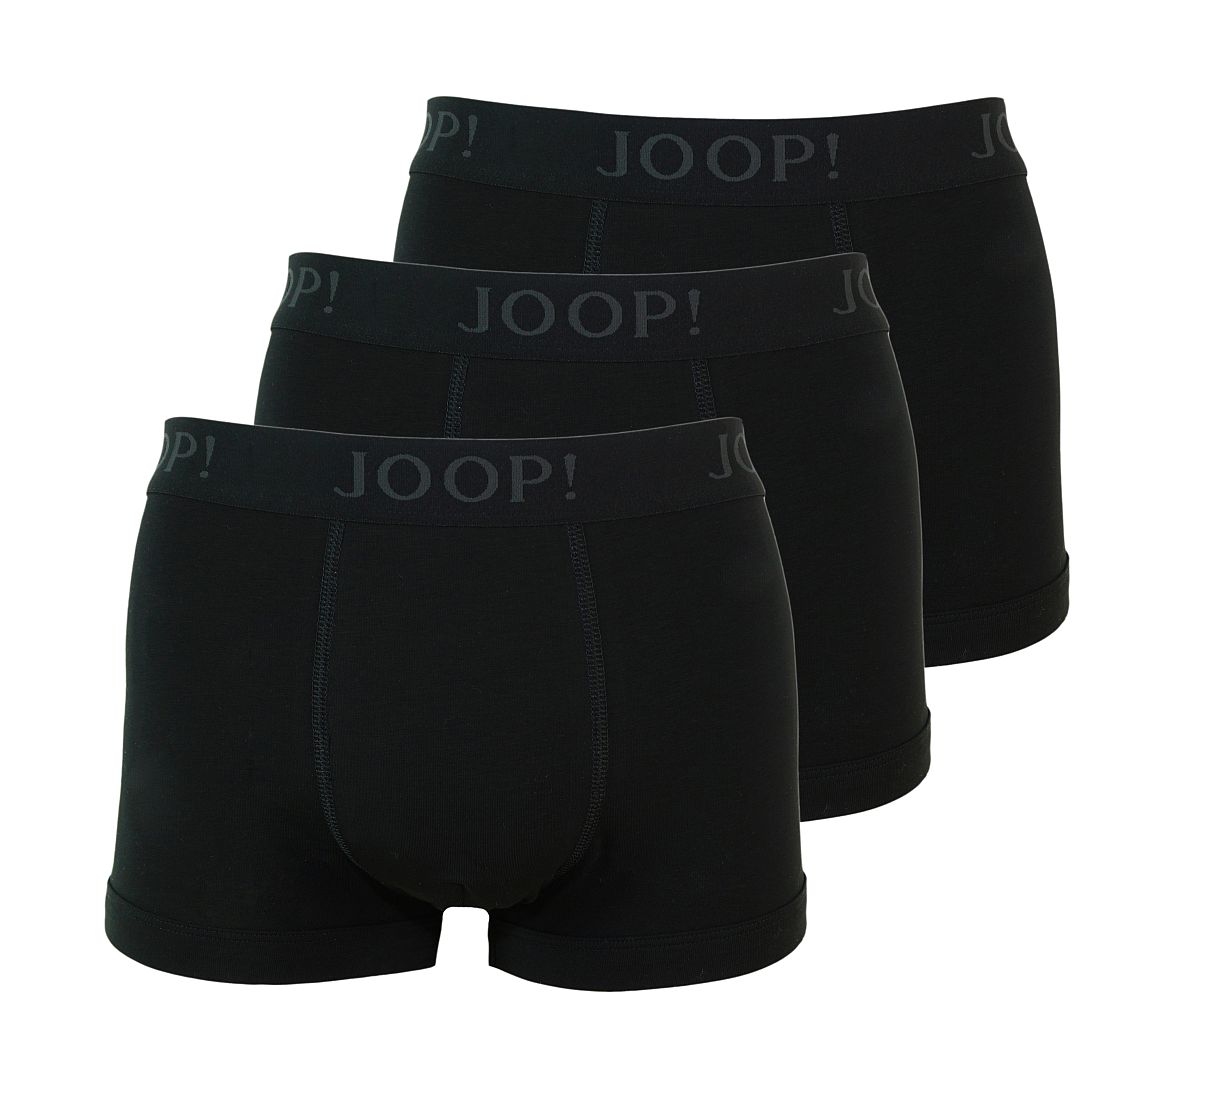 JOOP! Trunks Shorts 3er Pack 10001475 001 schwarz S17-JPST1gp